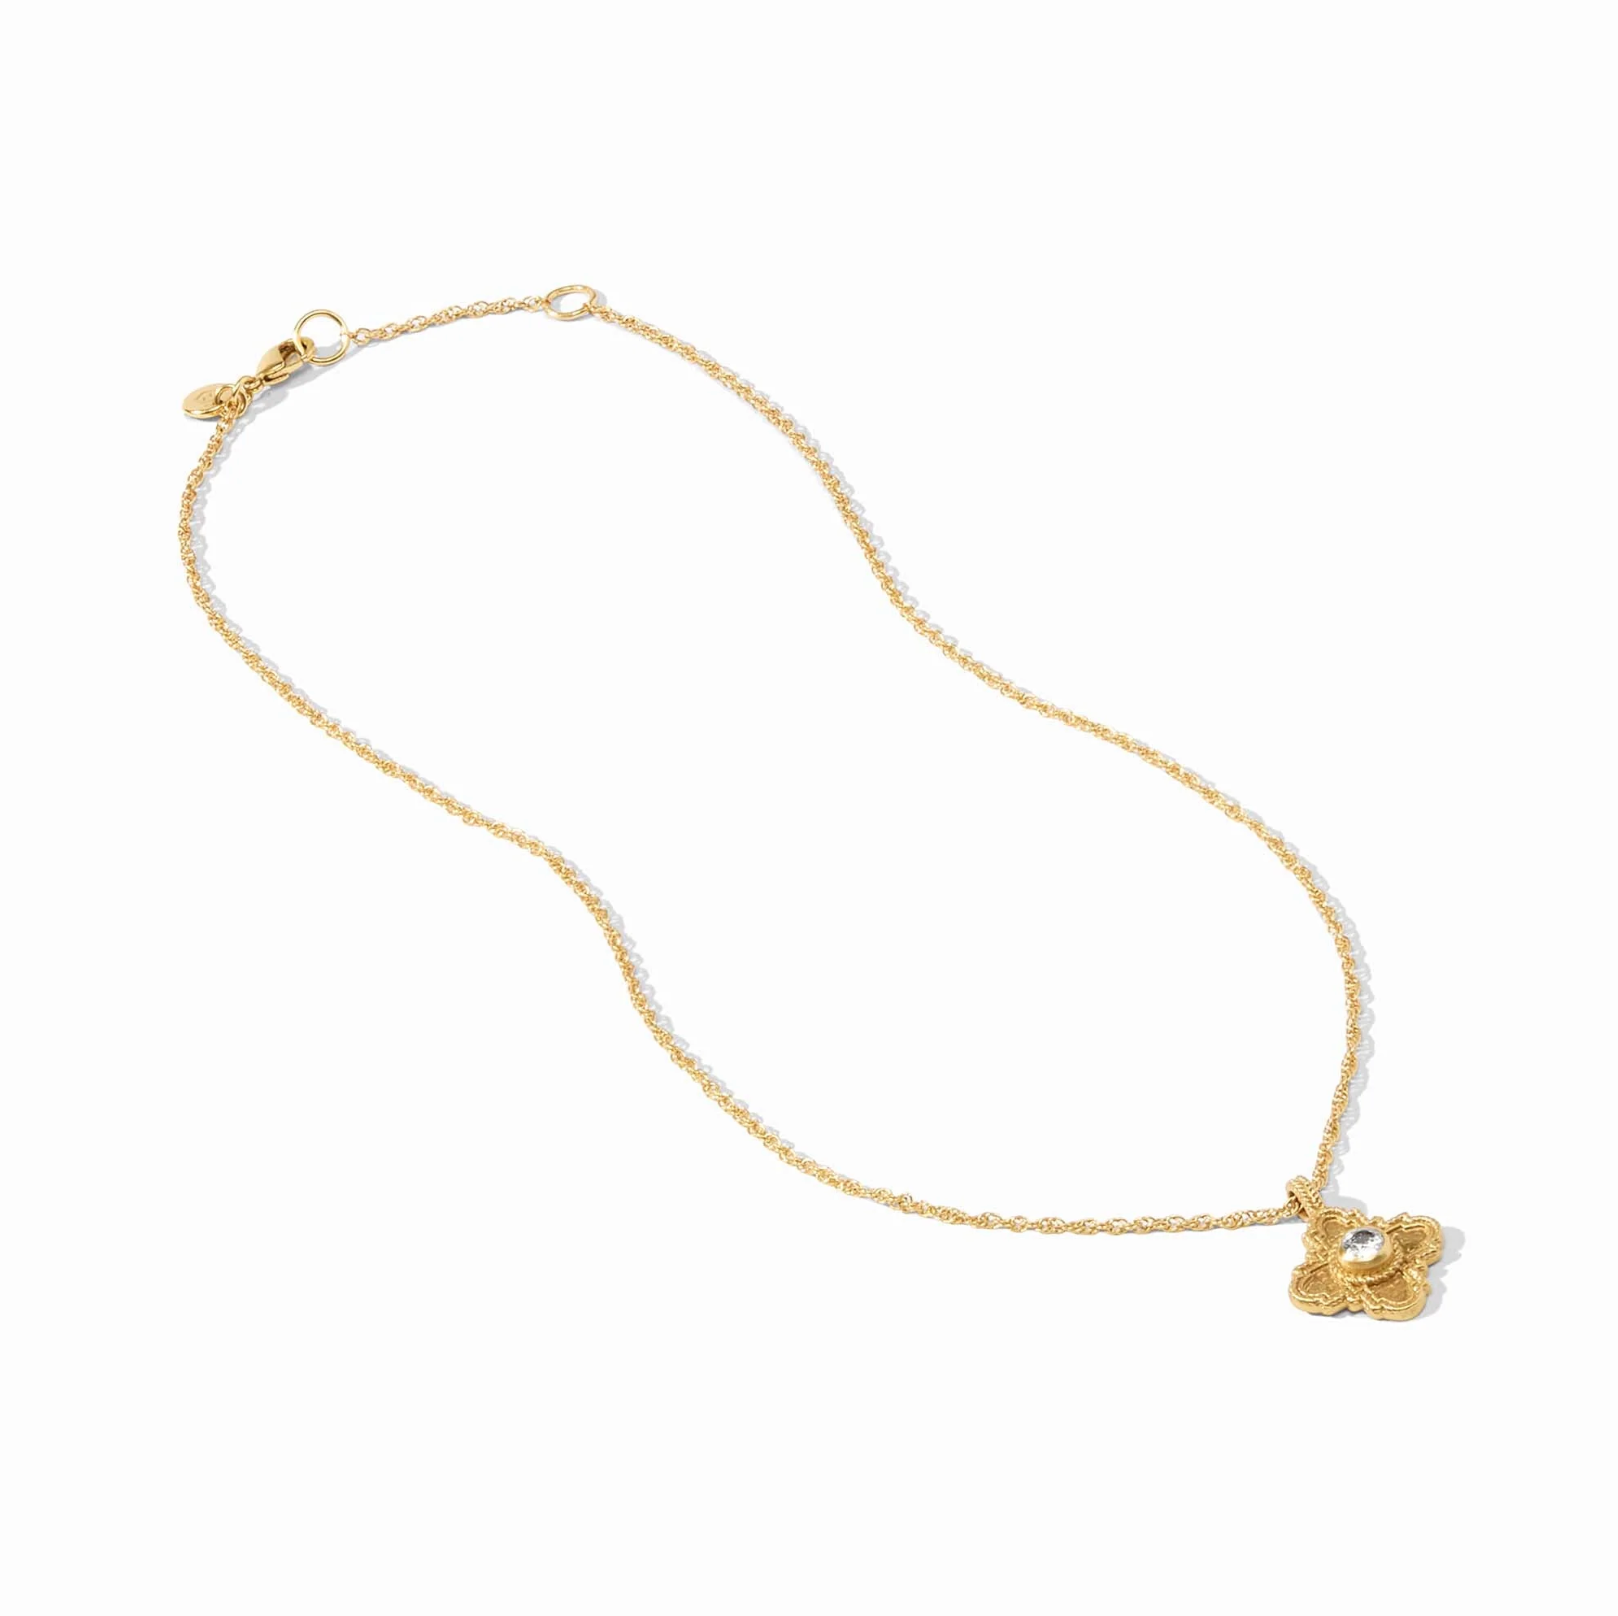 Malta Theodora Delicate Necklace - The French Shoppe